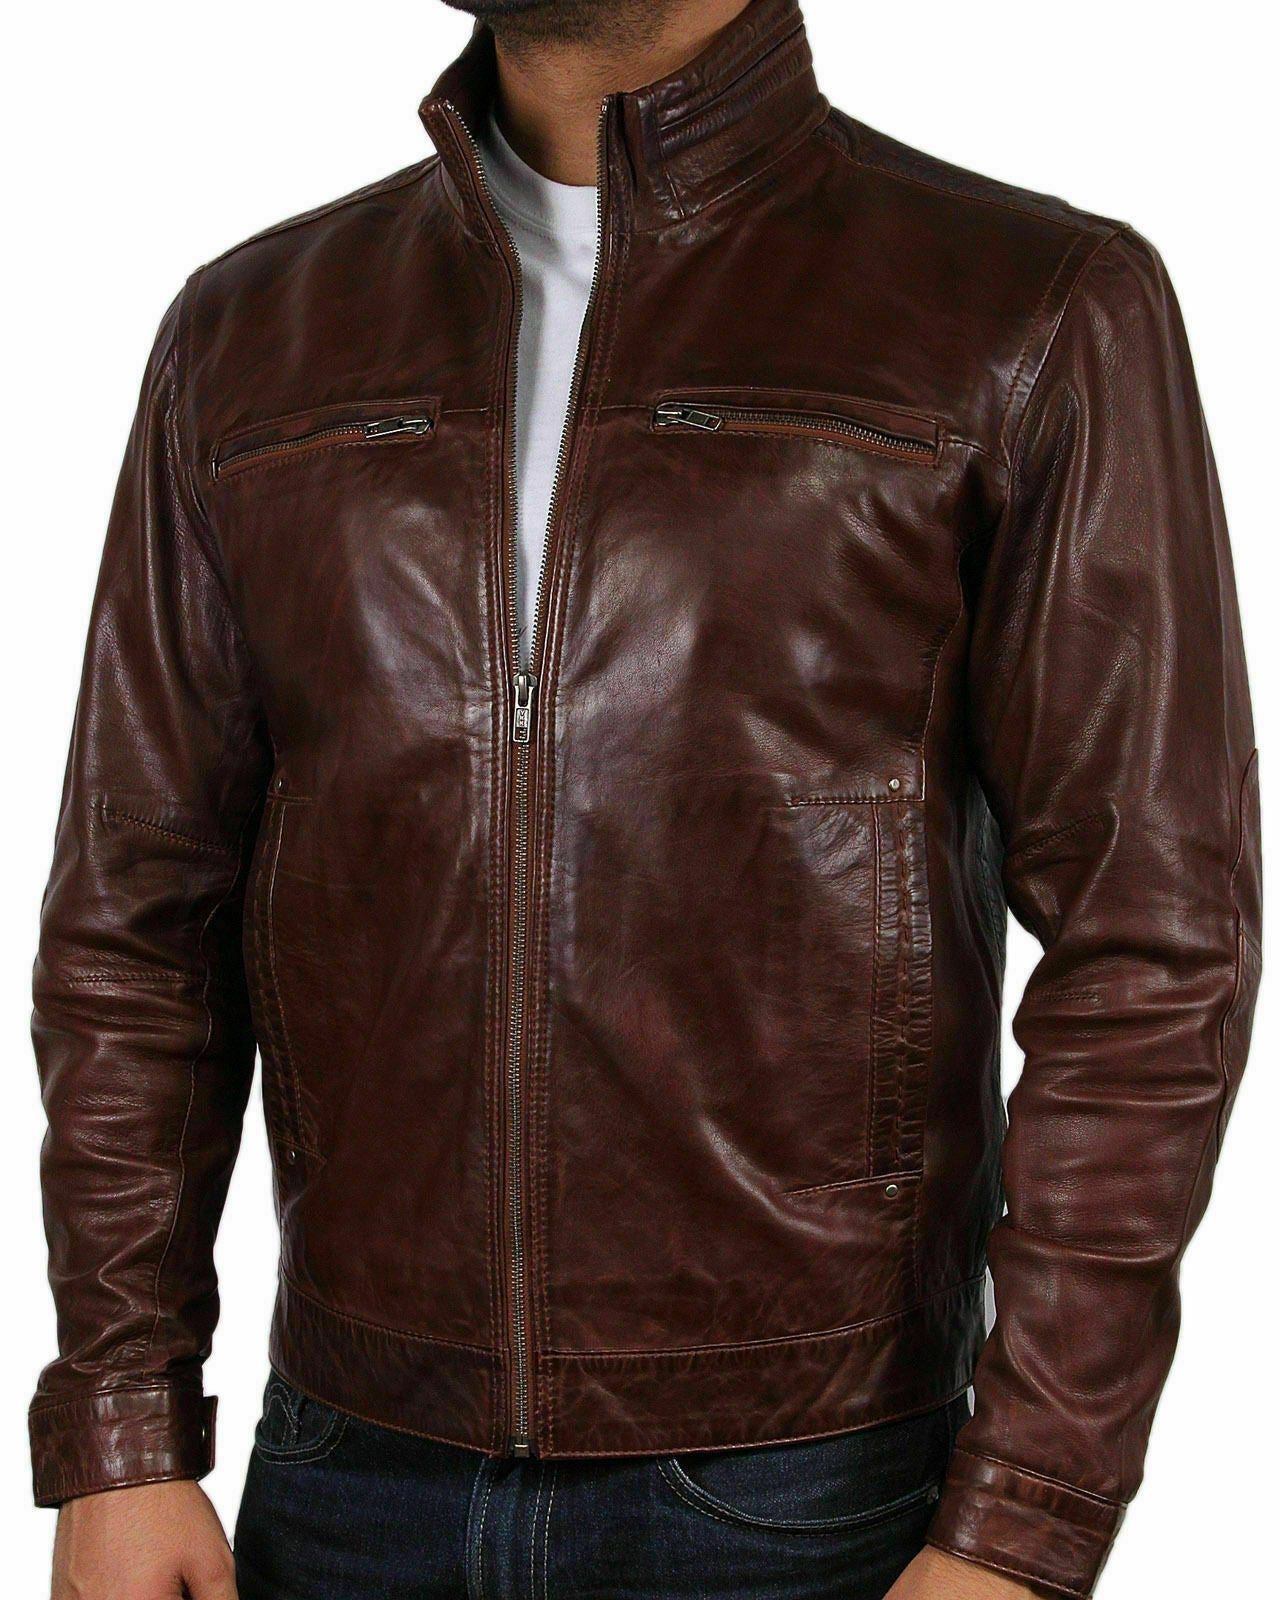 NOORA Mens Genuine Leather Biker jacket Bomber Distressed vintage bomber jacket